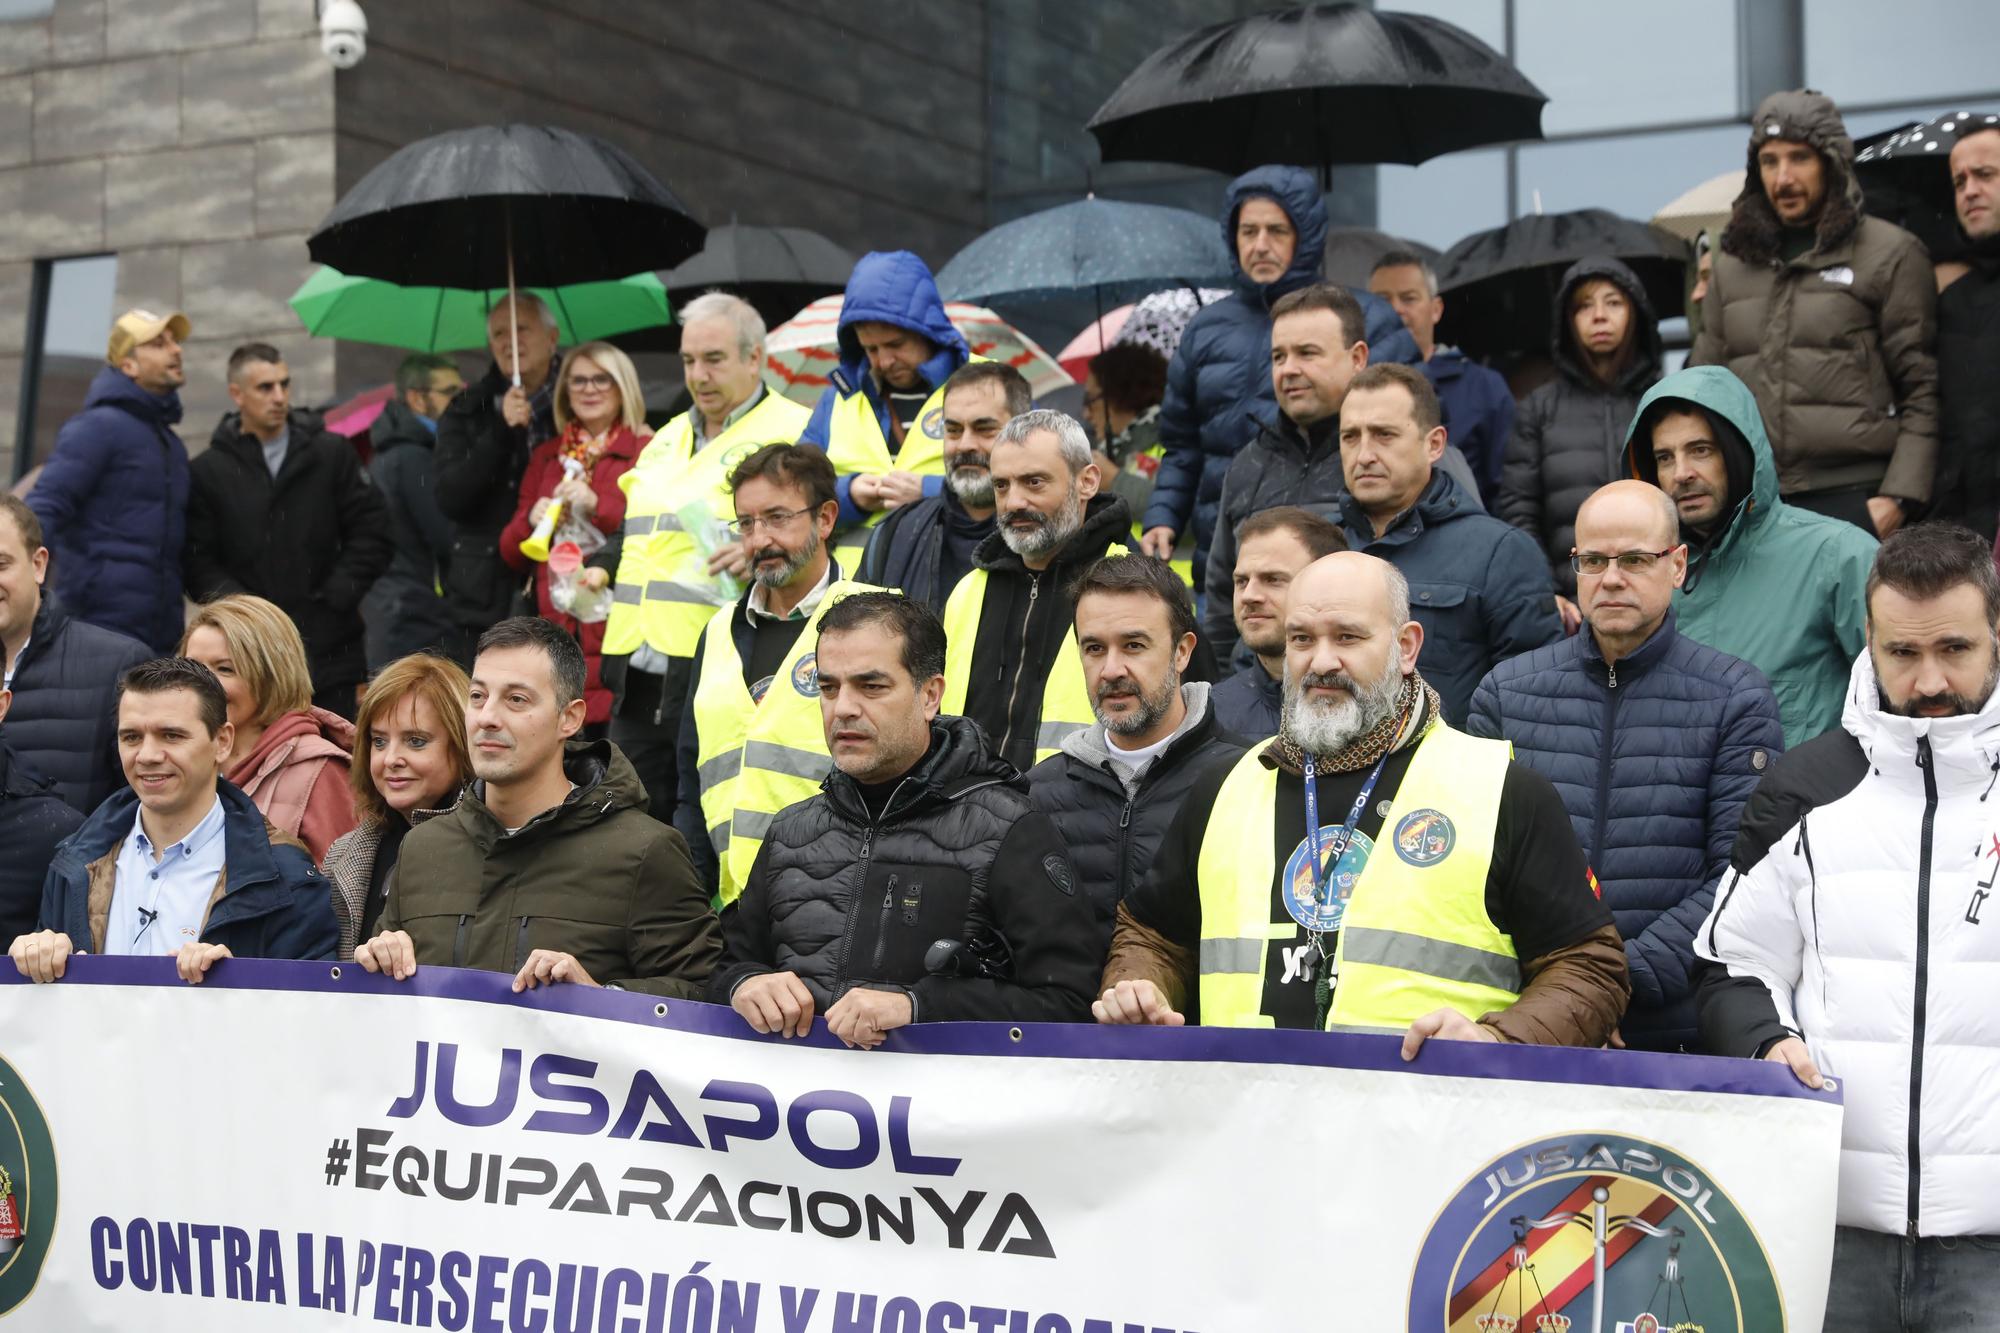 En imágenes: Clamor policial en Gijón contra los mandos por la "coacción y persecución" a la libertad sindical